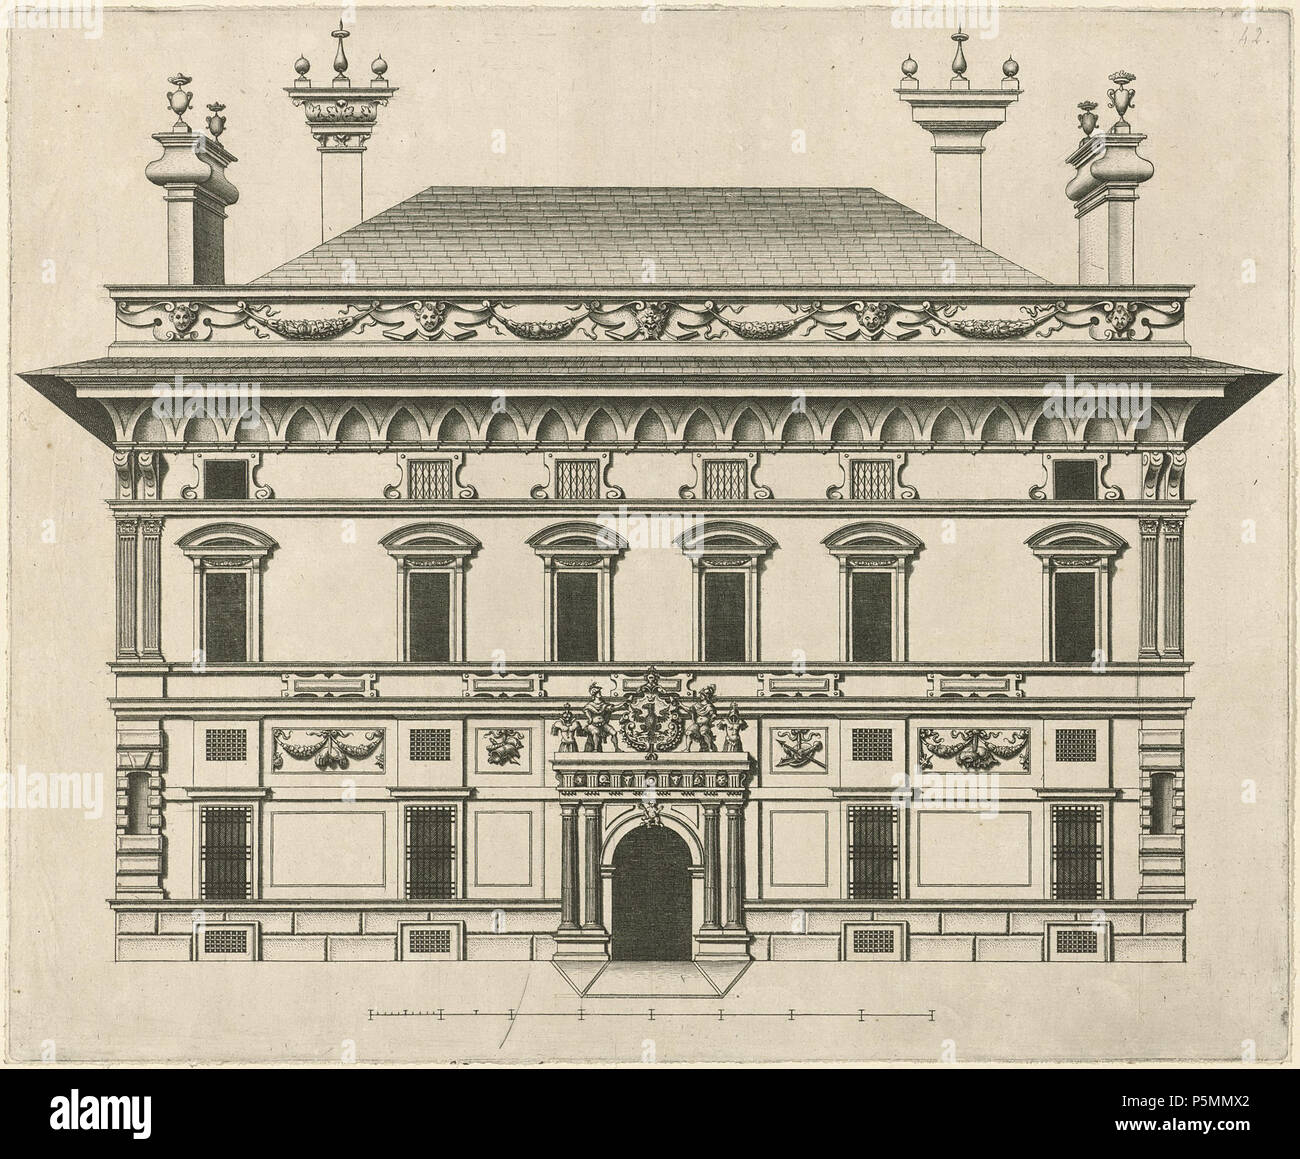 Palazzo Doria Spinola. Späten Renaissance Manierismus Haus von Spinola Palace in Genua. 1622. N/A 148 zurückzuführen auf Nicolaes Rijckmans007 Stockfoto